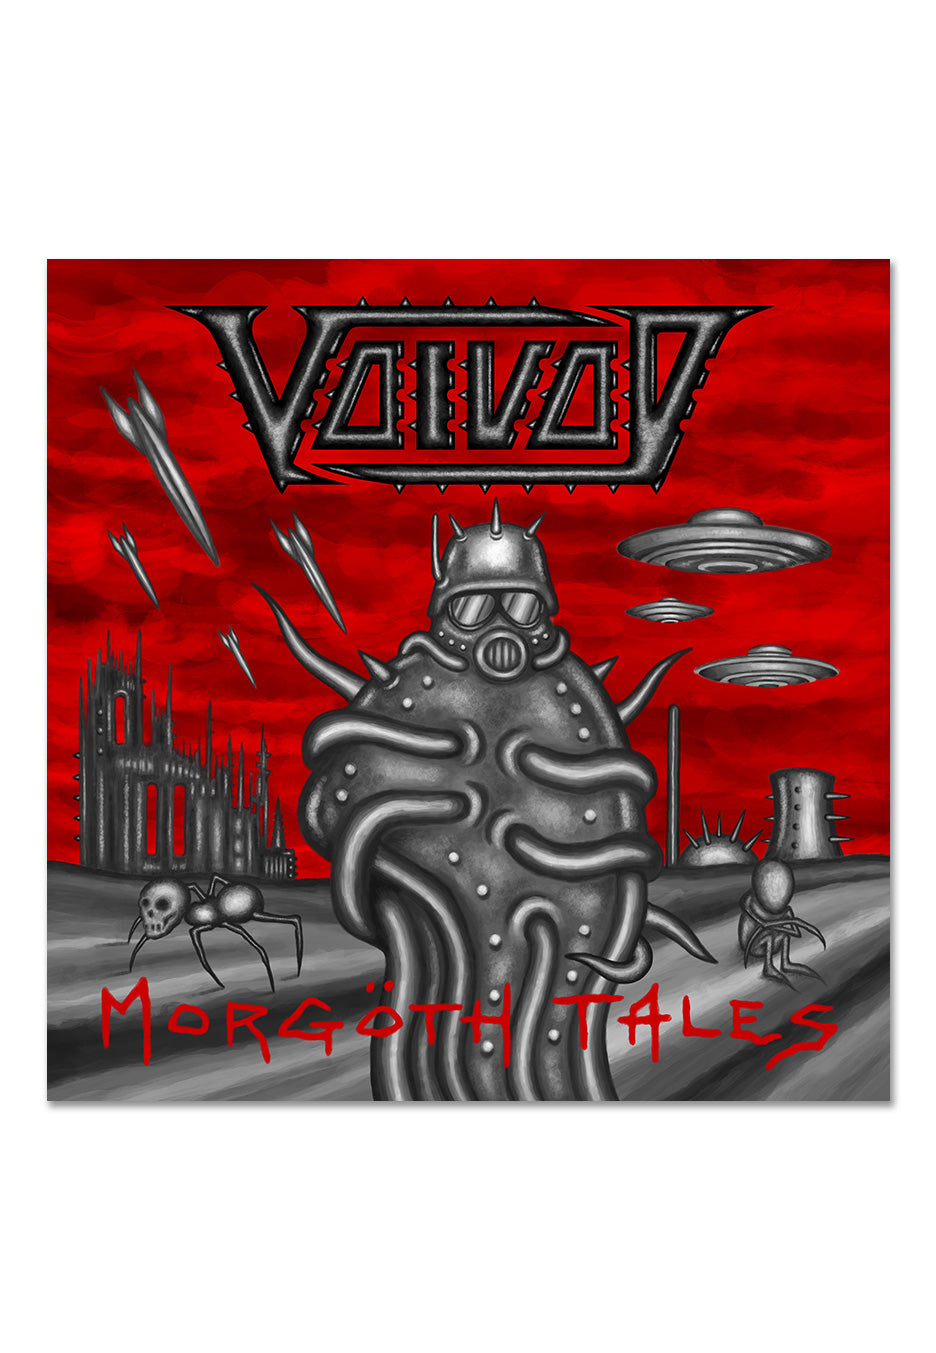 Voivod - Morgöth Tales - Vinyl